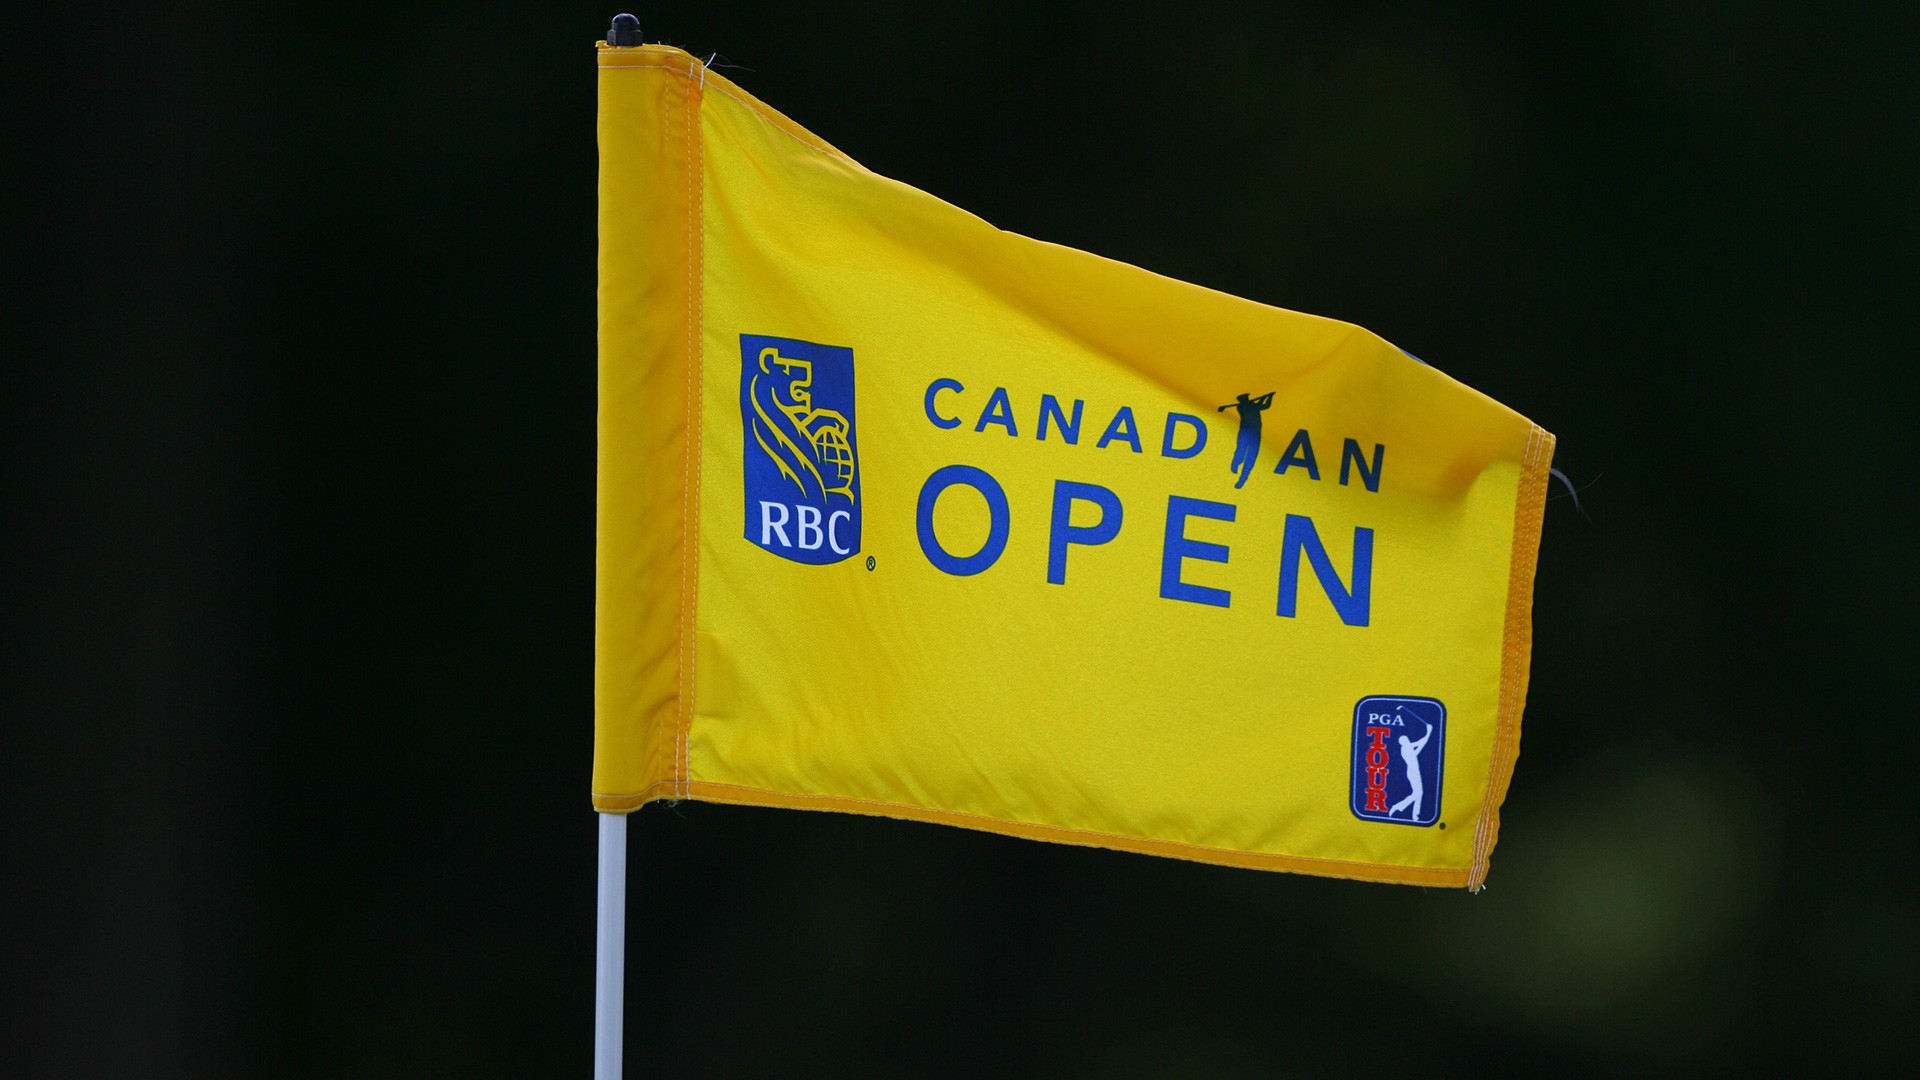 RBC Canadian Open to precede U.S. Open in 2019